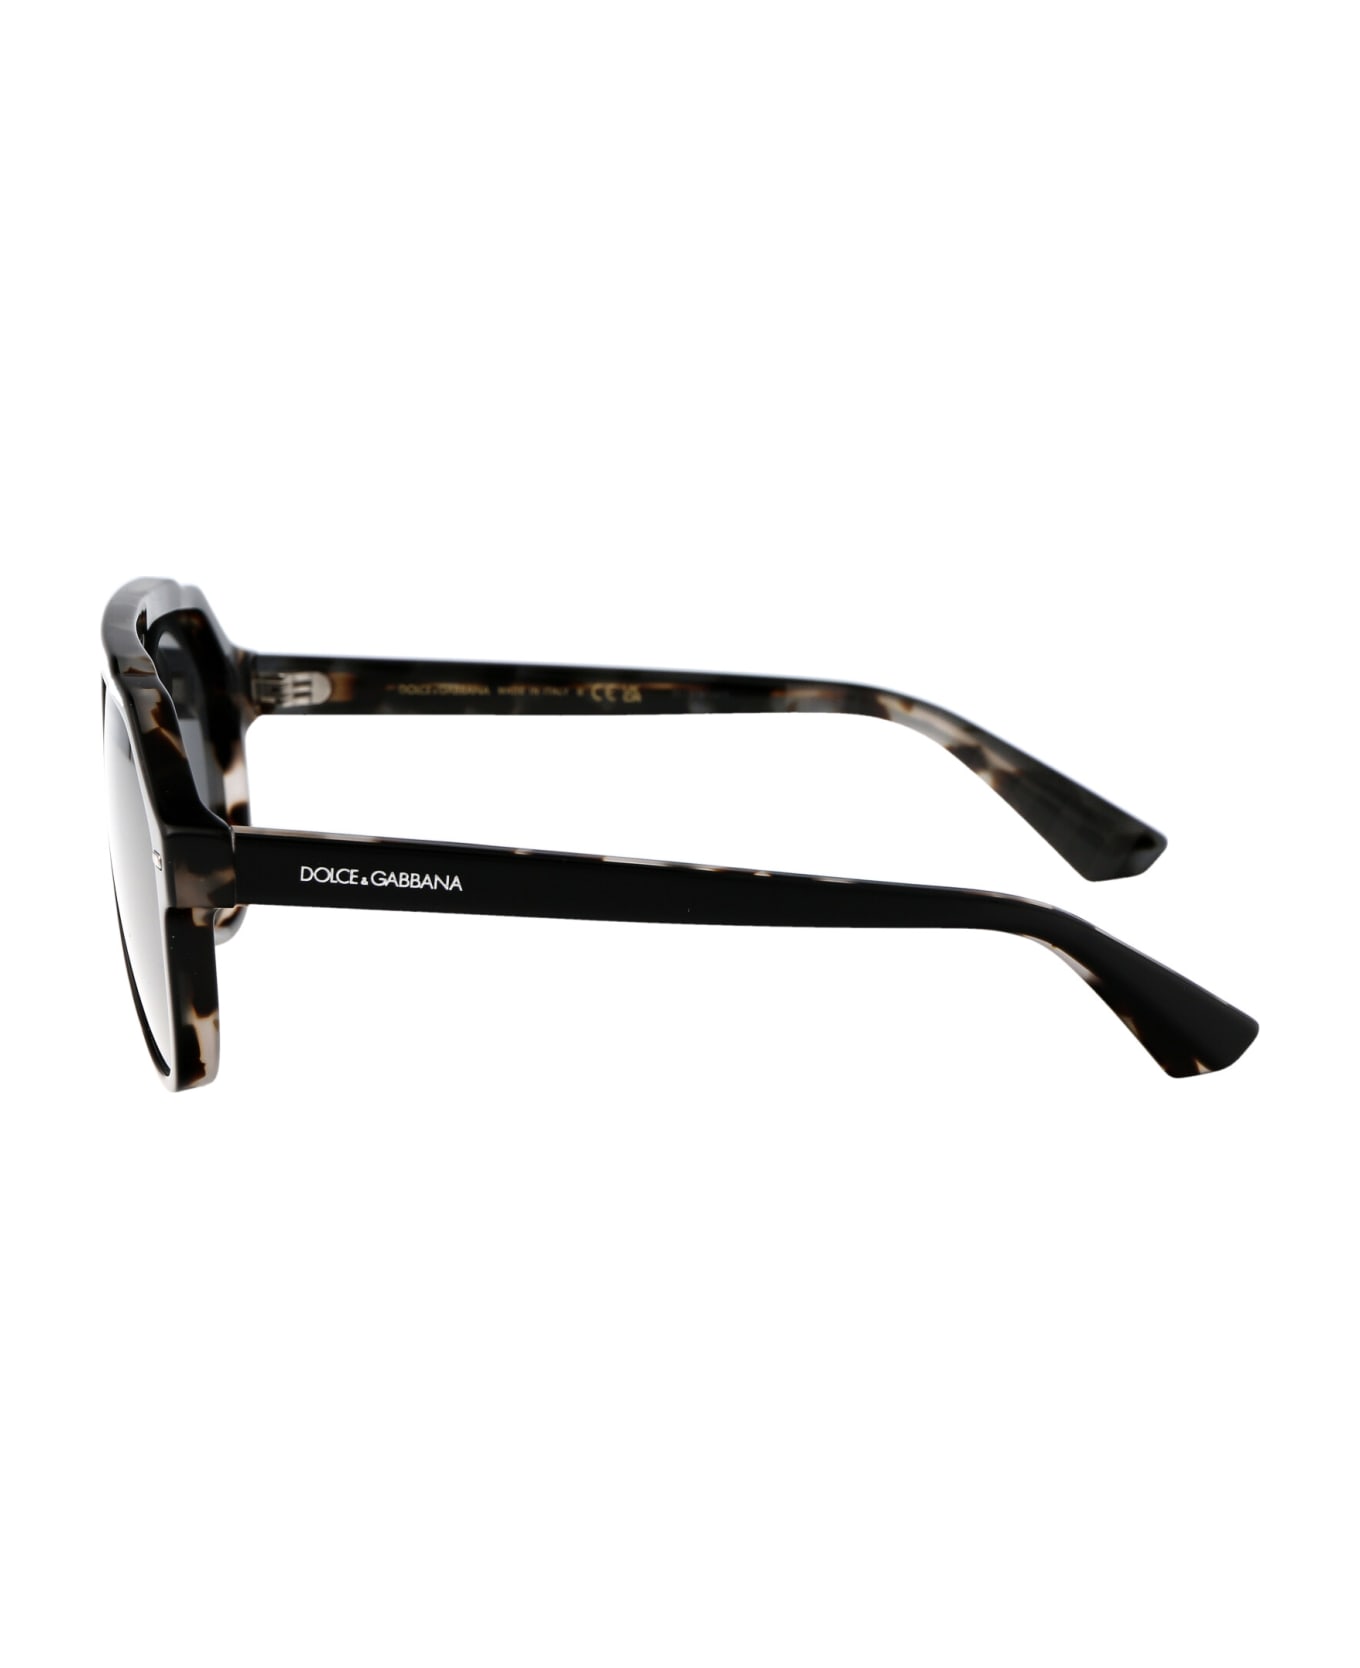 Dolce & Gabbana Eyewear 0dg4452 Sunglasses - 340387 Black On Grey Havana